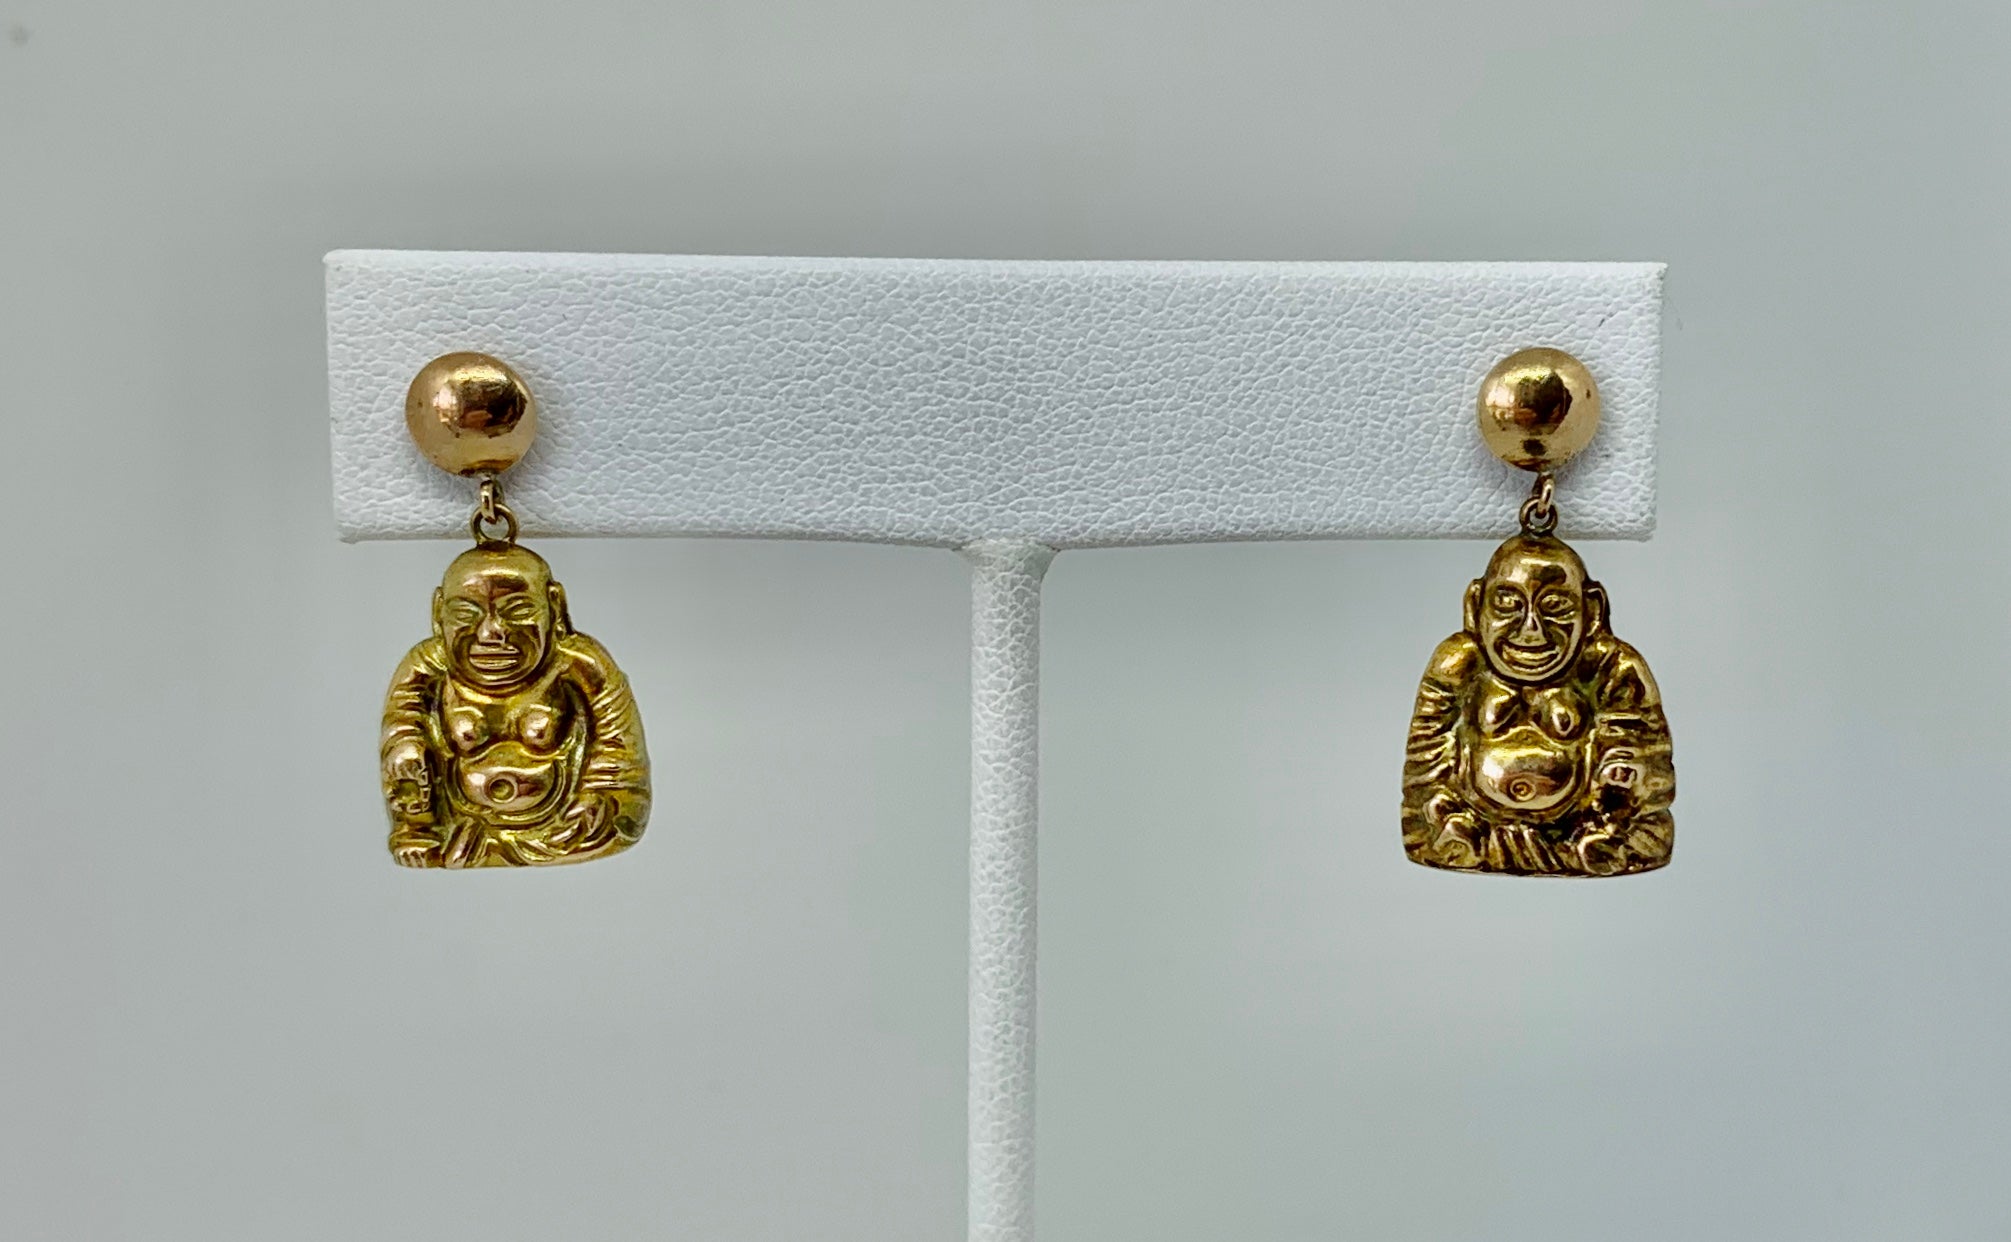 Il s'agit d'une magnifique paire de boucles d'oreilles anciennes en or 14 carats, de type bouddha souriant et heureux.  Les merveilleuses boucles d'oreilles comportent deux magnifiques bouddhas en or.  Les Bouddhas sont entièrement tridimensionnels.